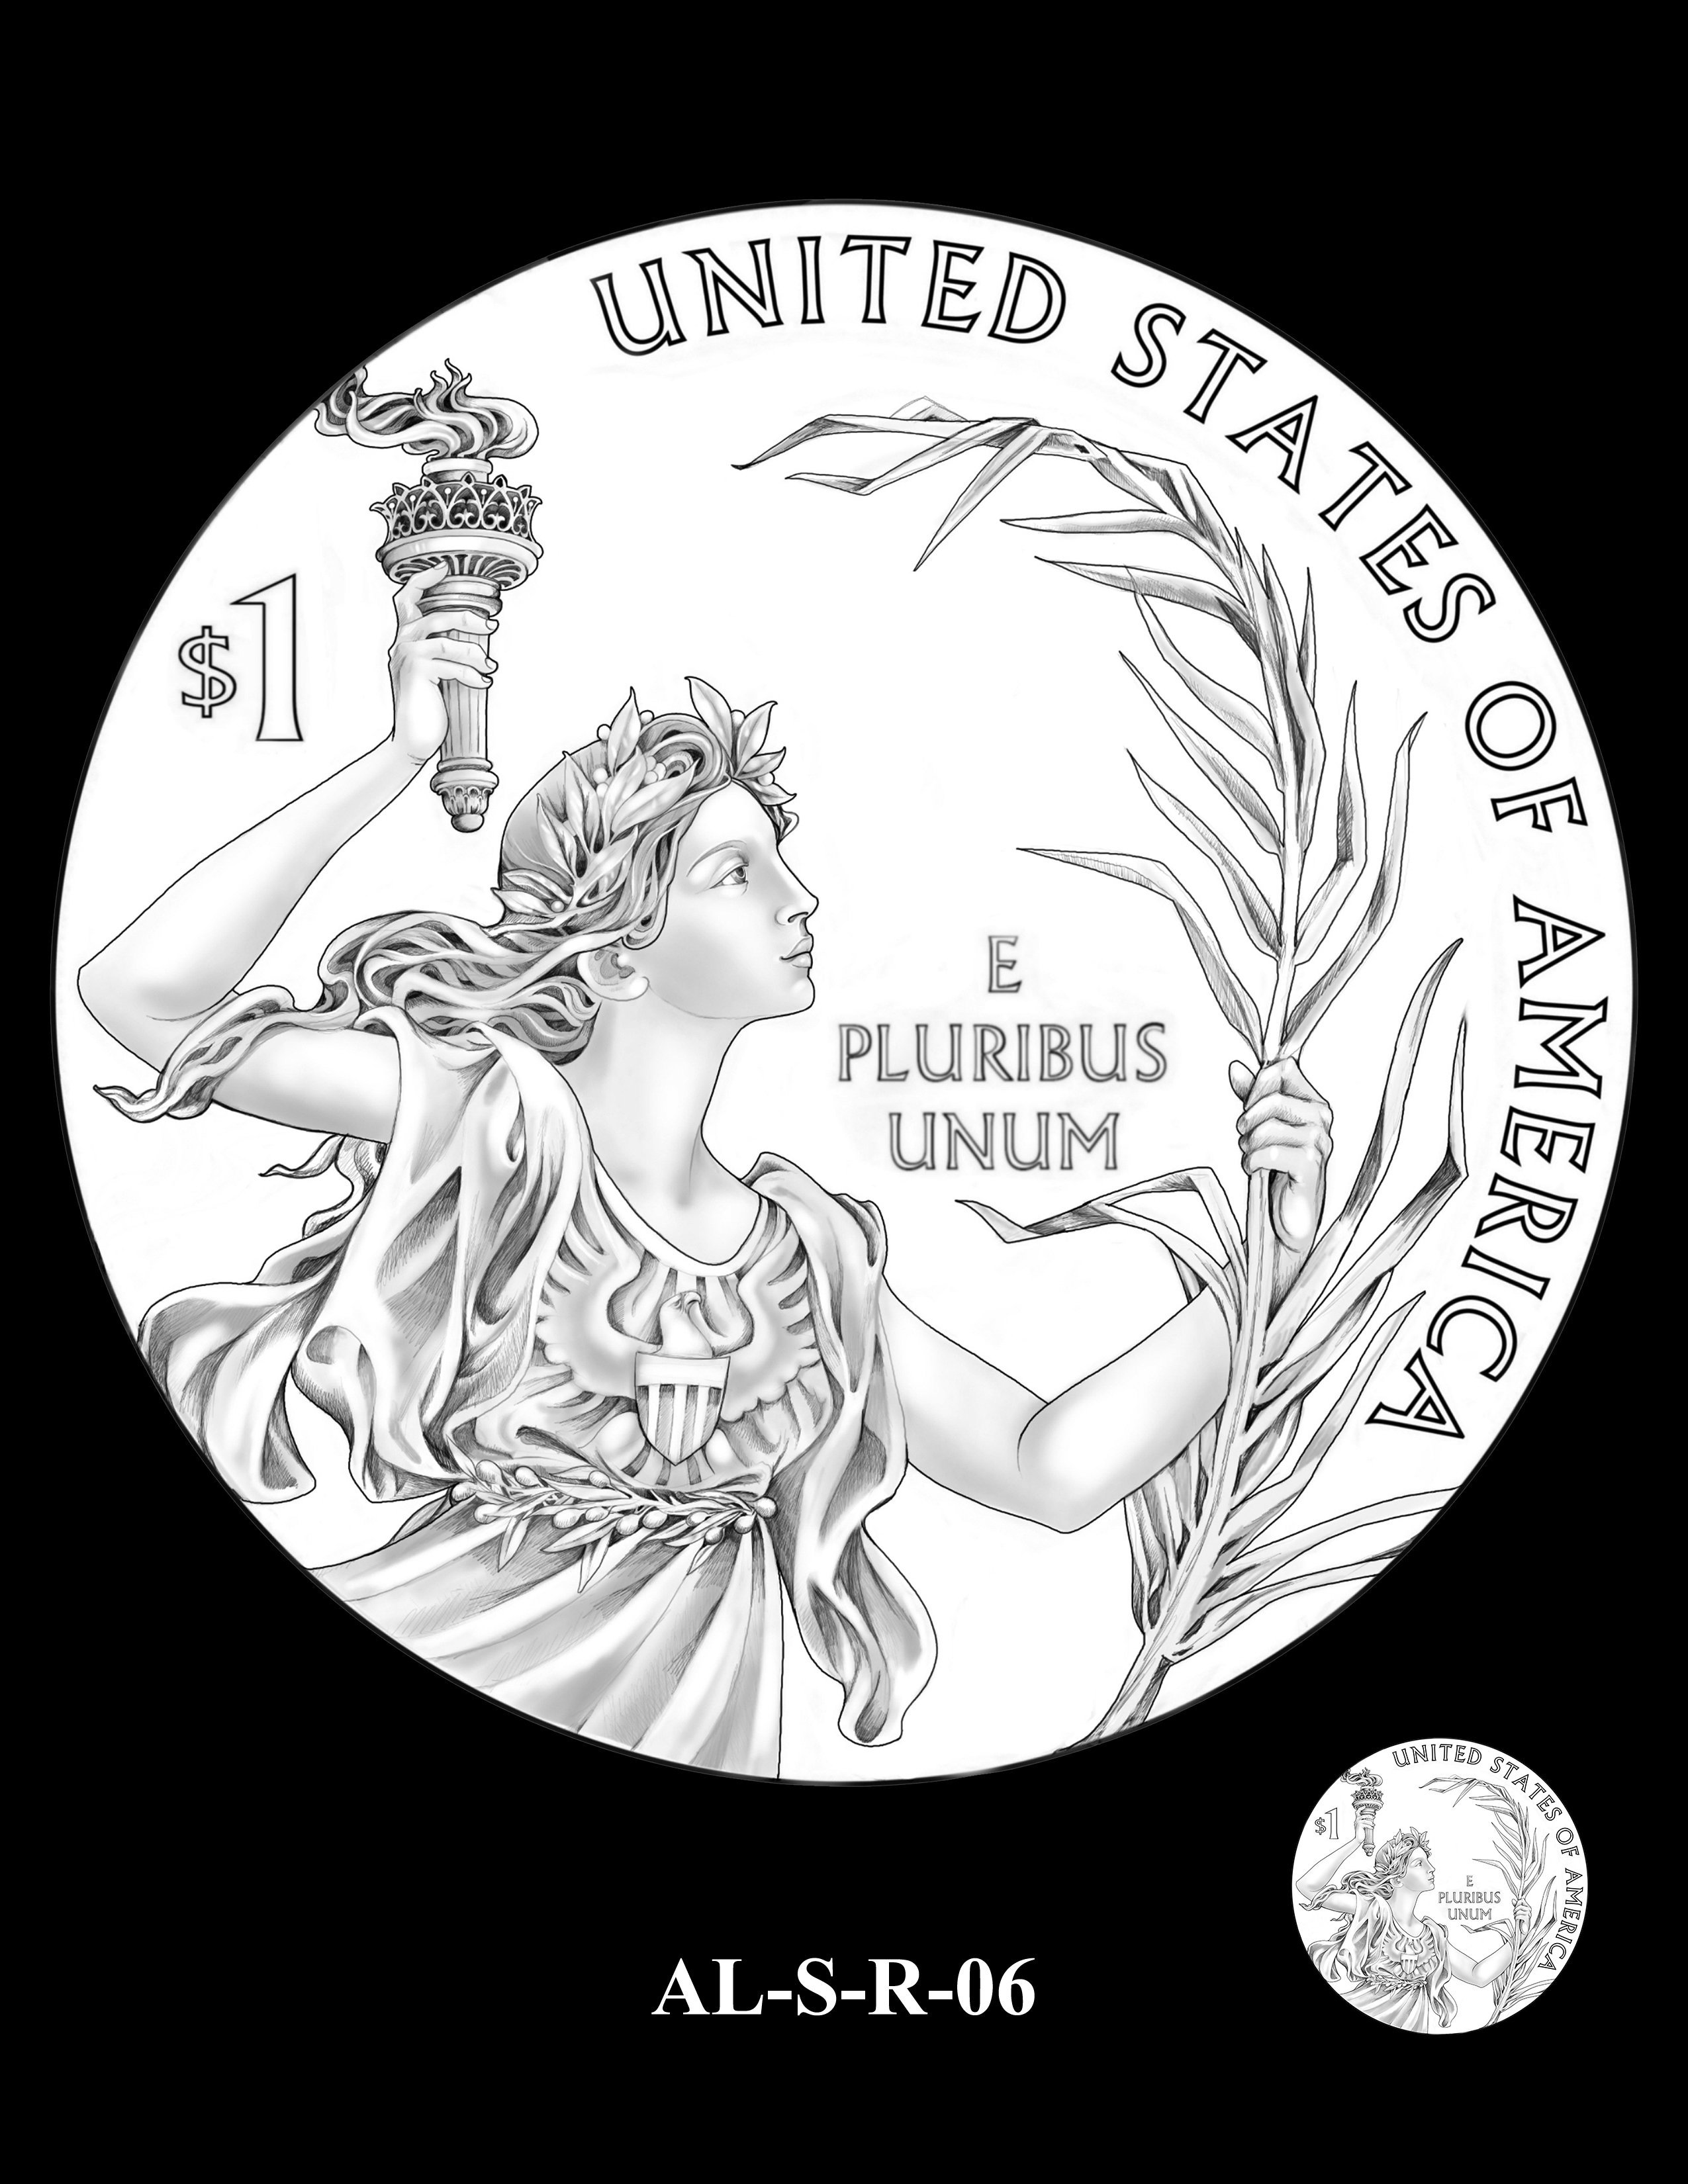 AL-S-R-06 -- 2019 American Legion 100th Anniversary Commemorative Coin Program - Silver Reverse